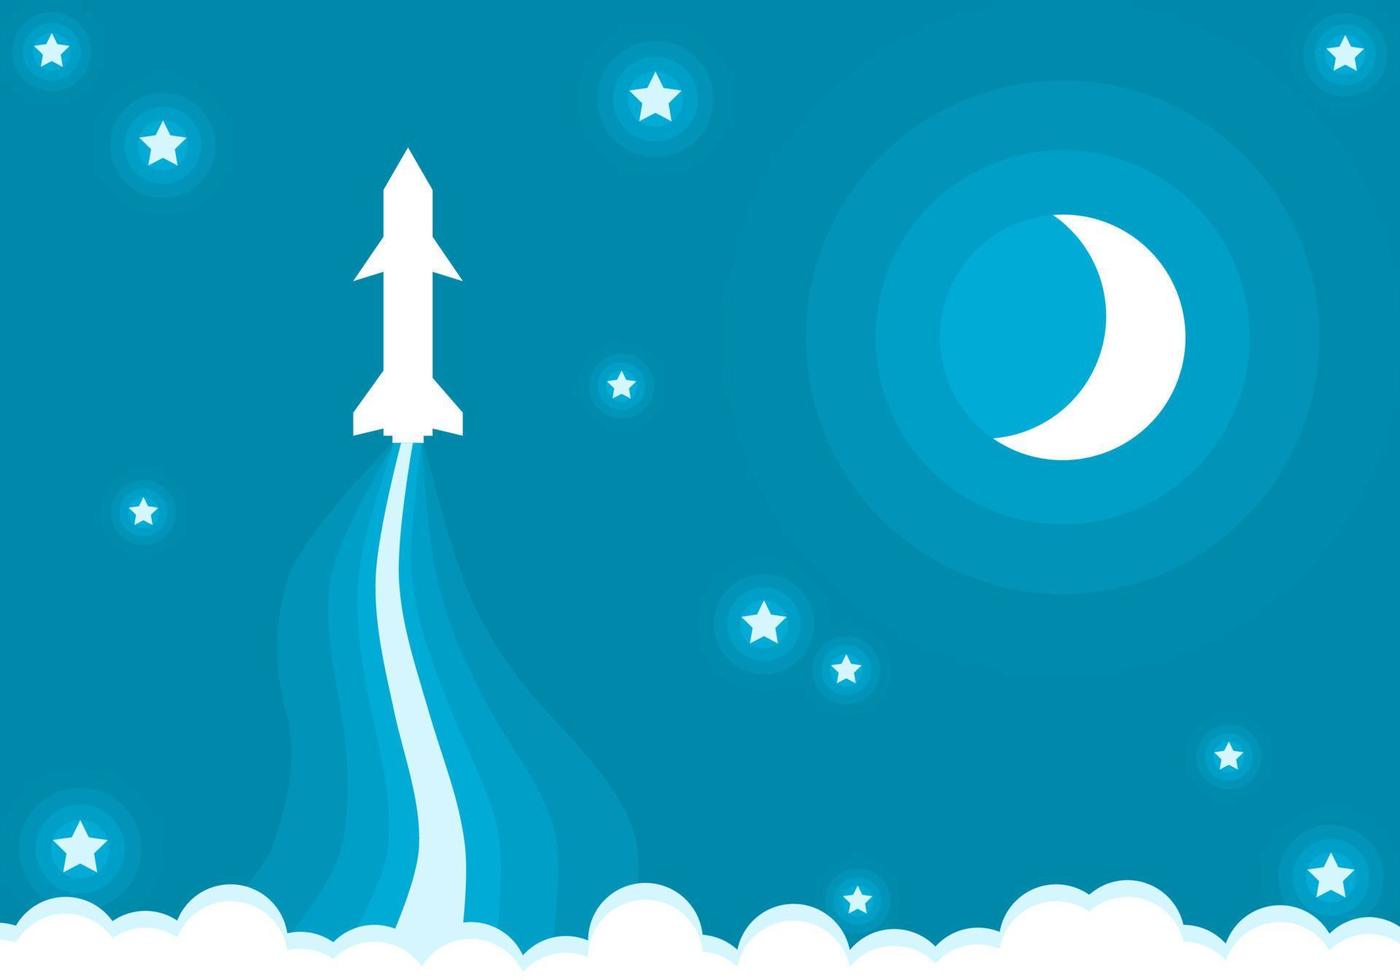 Weiß Rakete Raumschiff starten Reise zu Raum mit Halbmond Mond Sterne und Weiß Wolken auf Blau Himmel Hintergrund eben Vektor Karikatur Design.